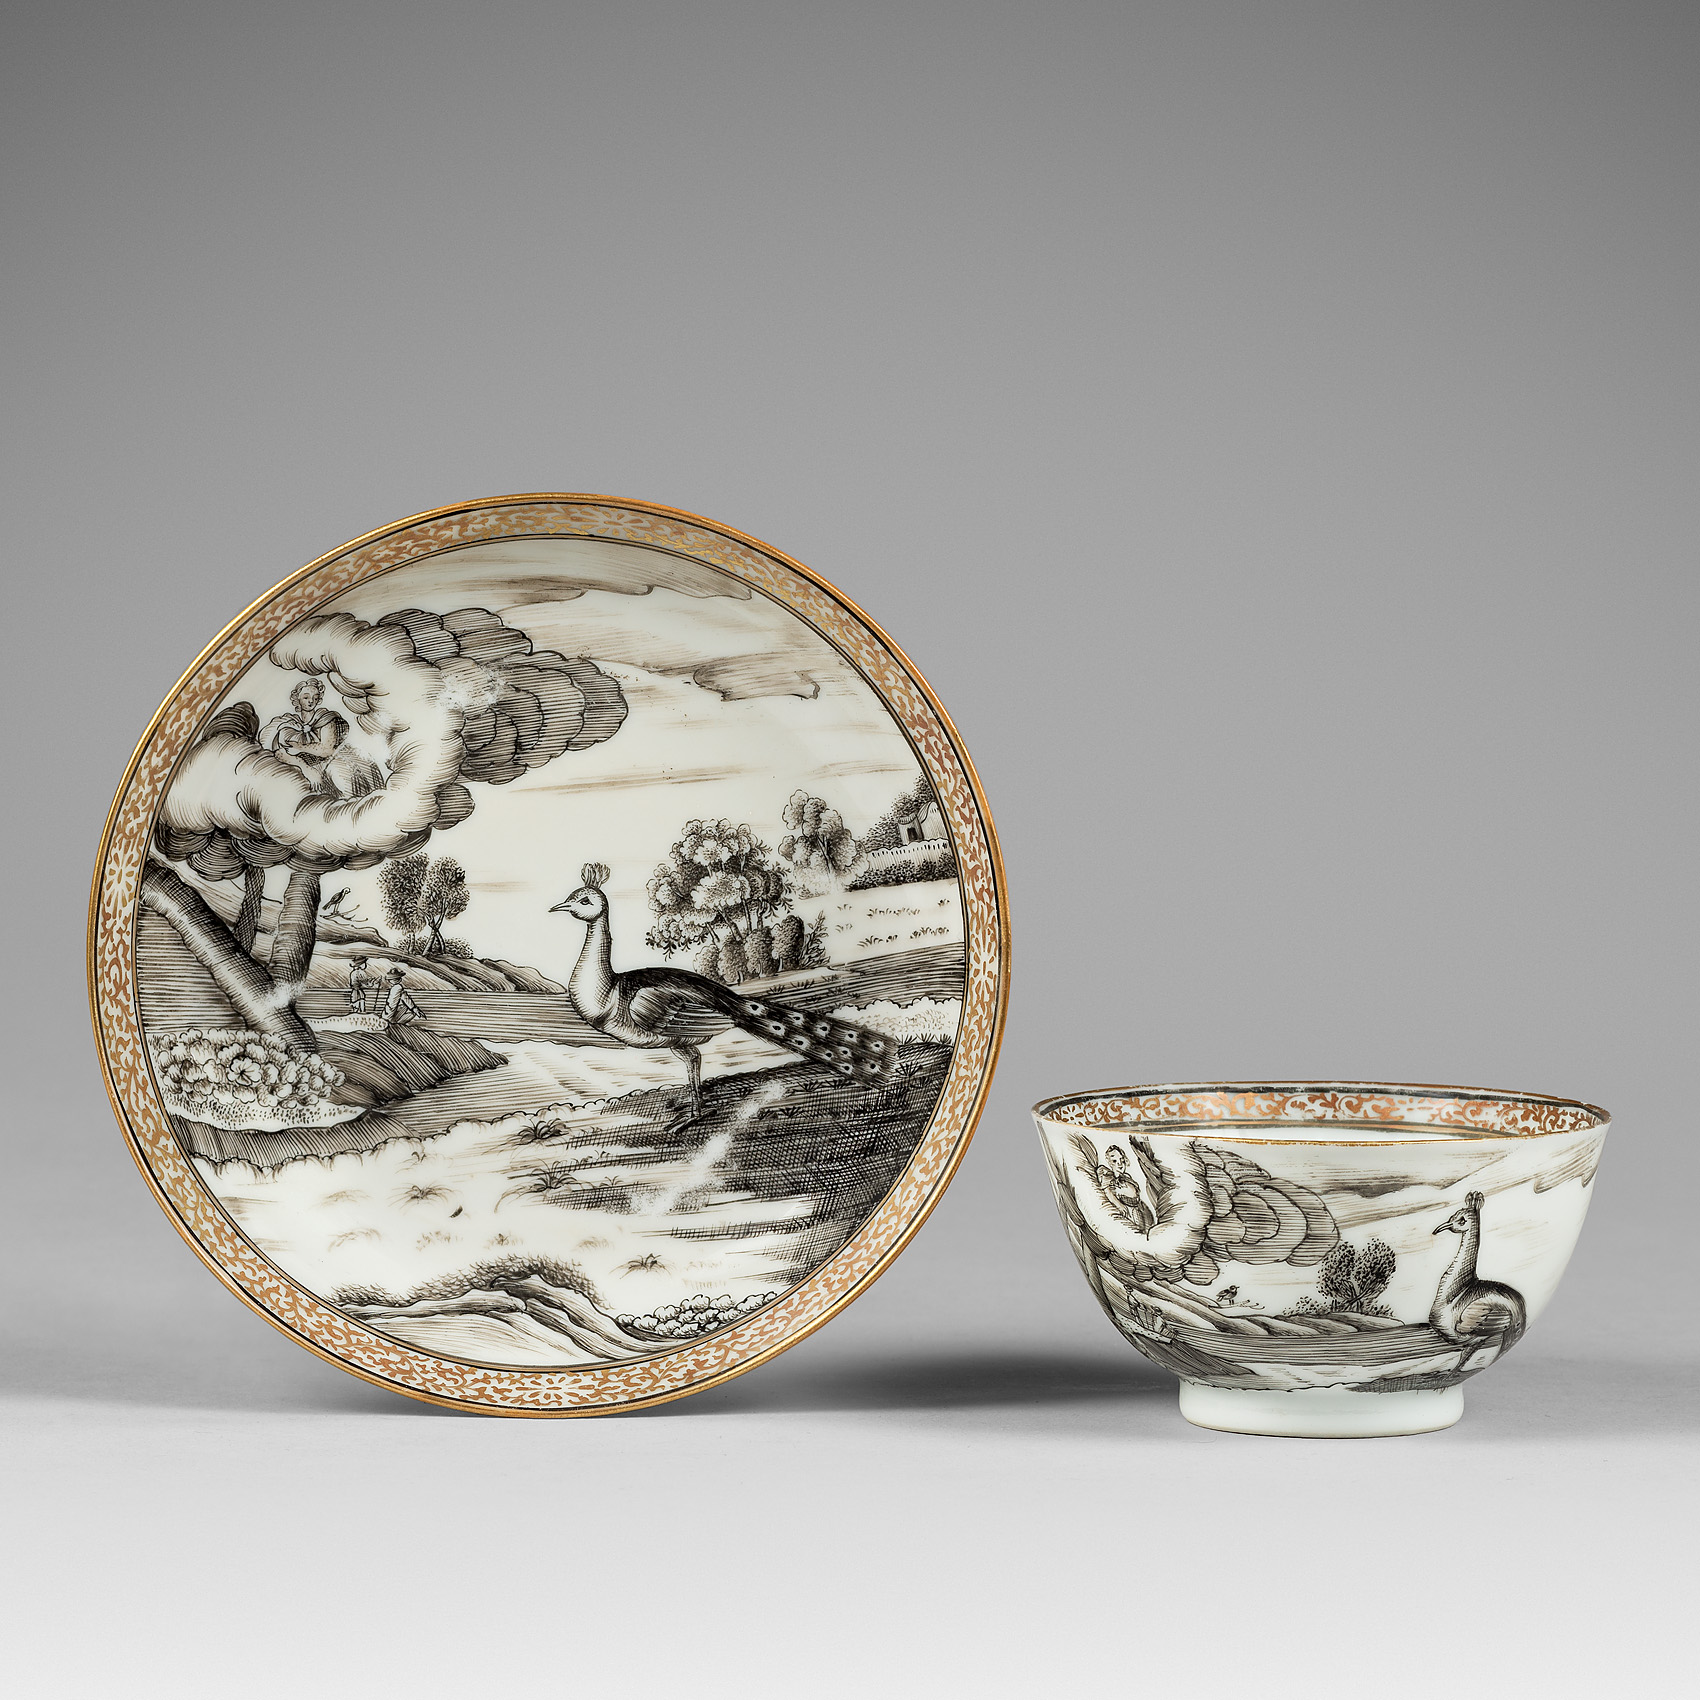 Porcelain Qianlong (12736-1795), circa 1745, China